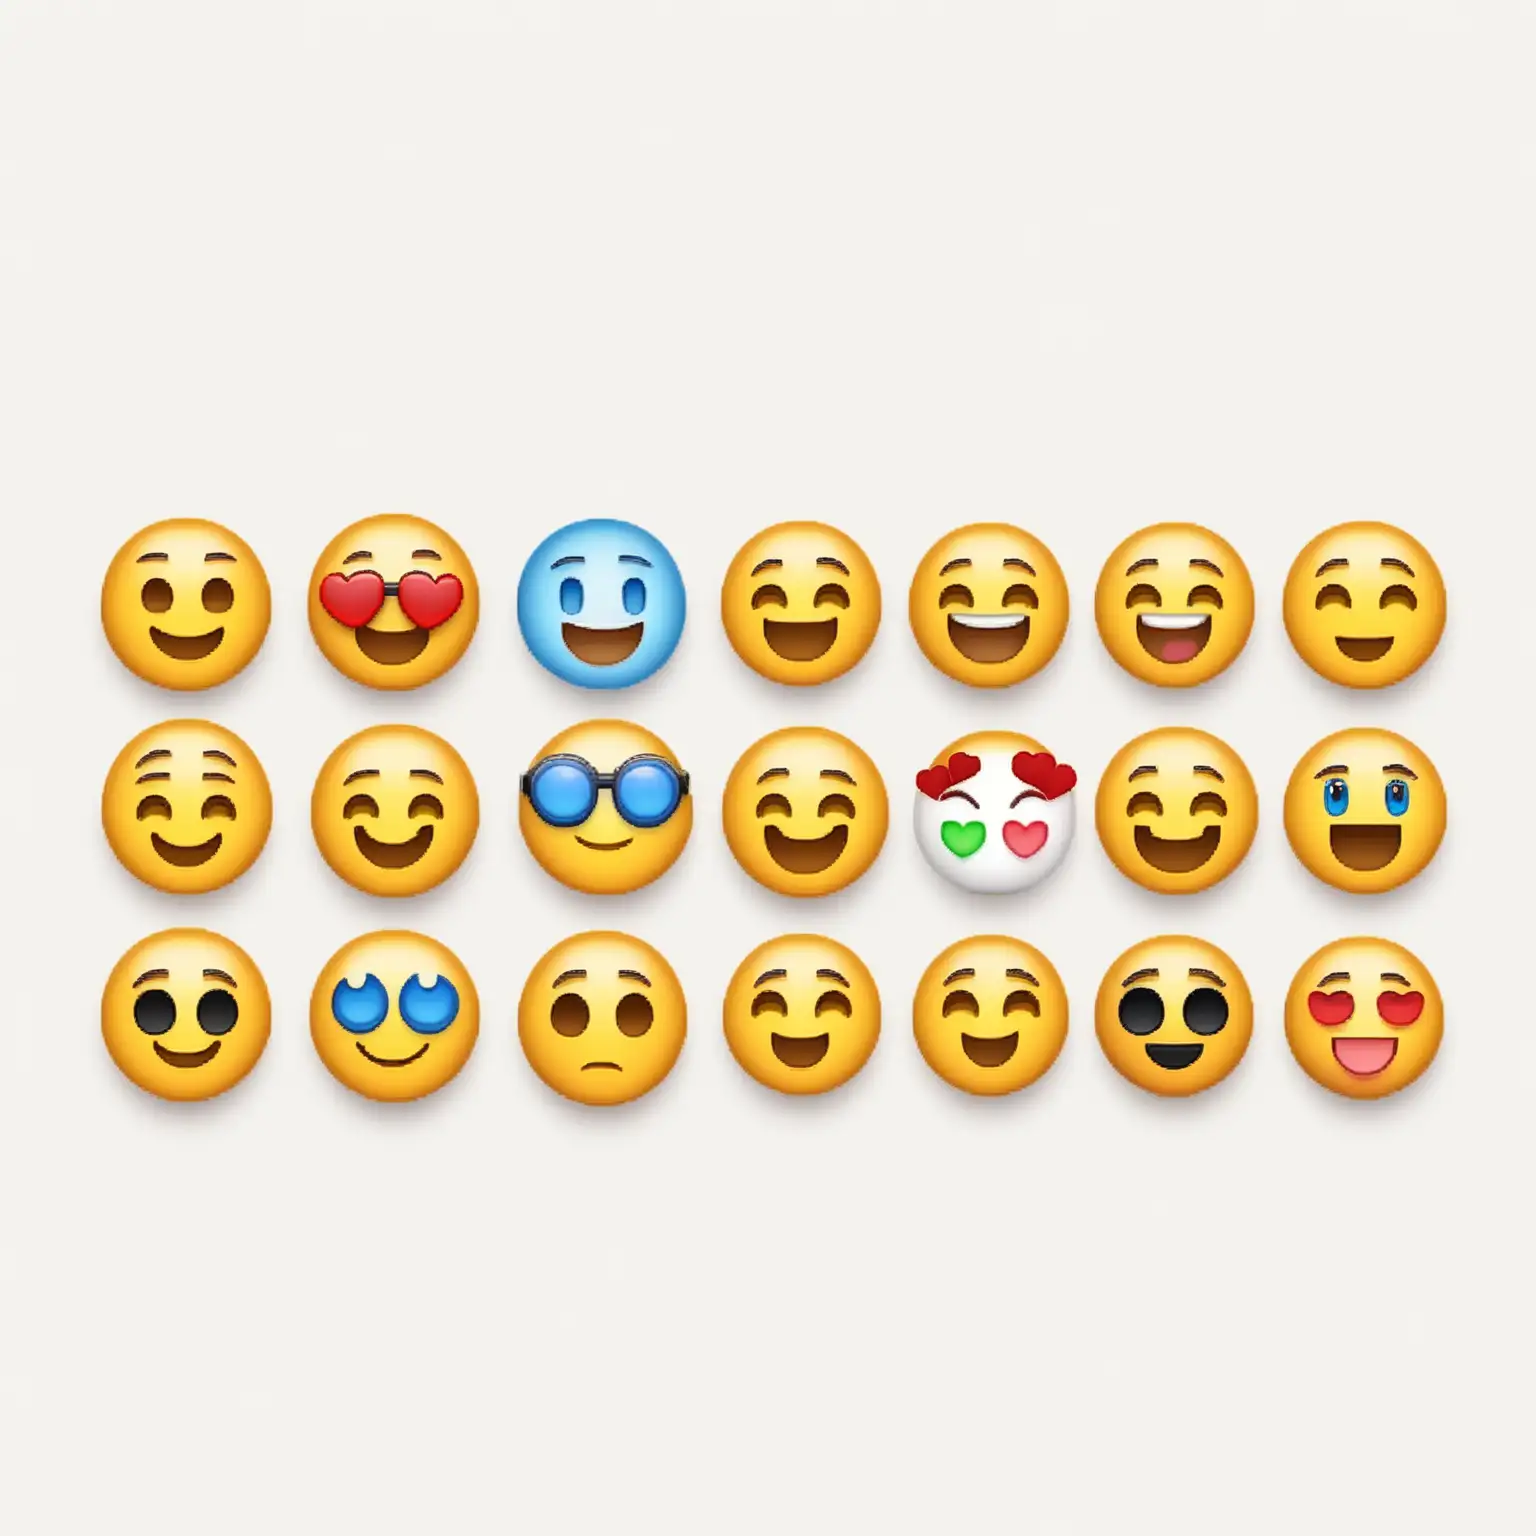 Variety of Emojis on White Background